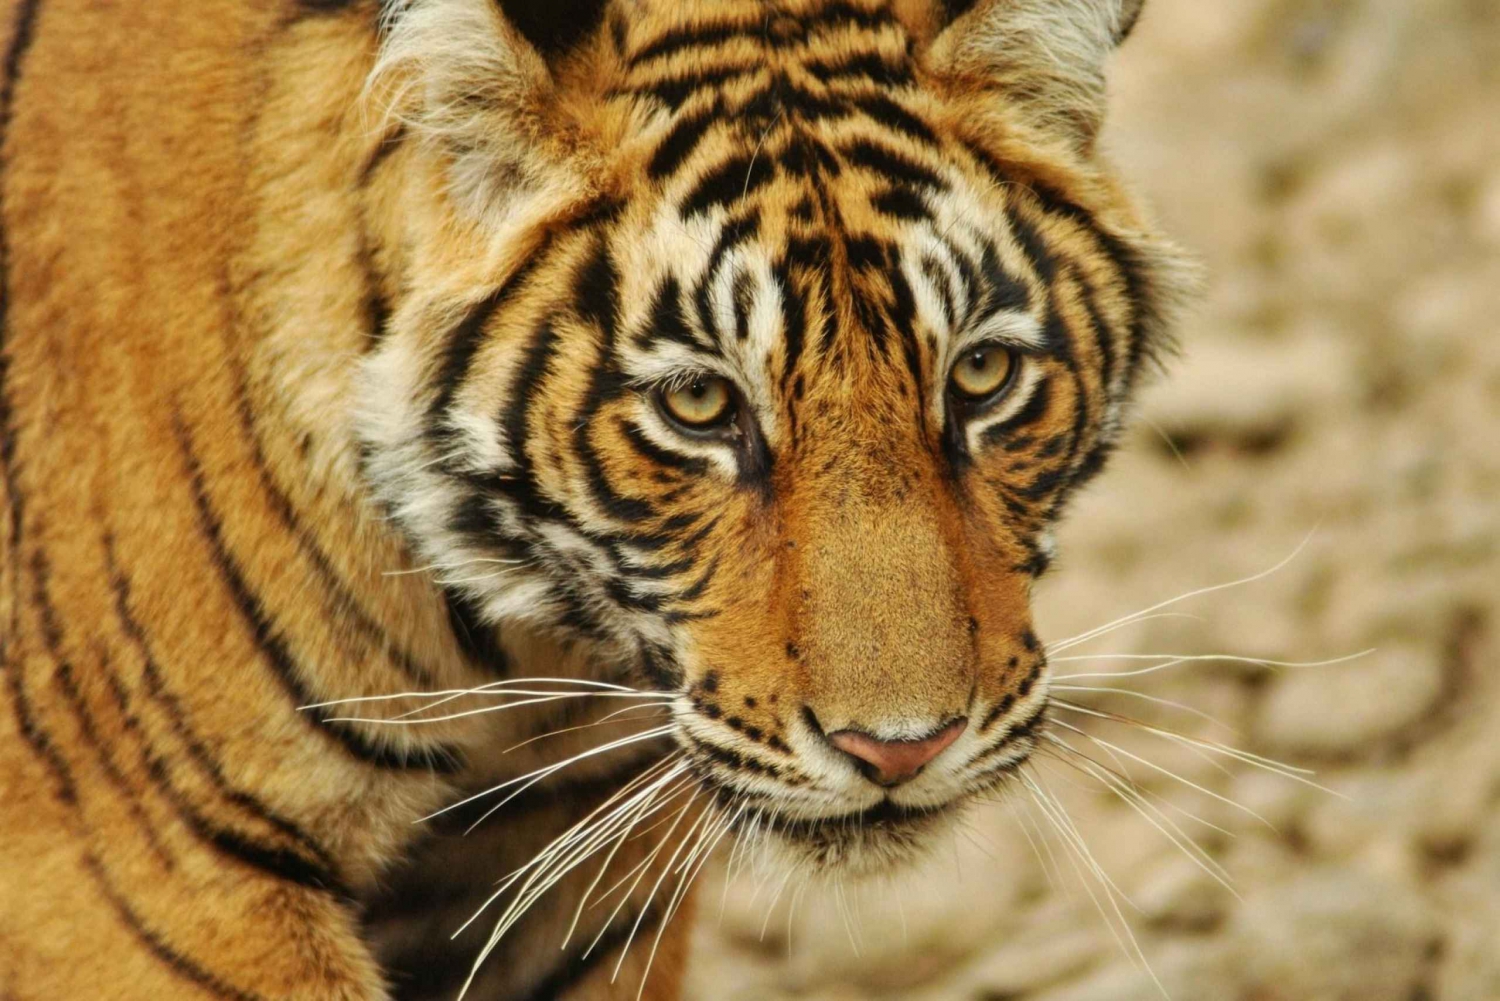 Z Delhi: 4-dniowe safari z tygrysami i wycieczka po Złotym Trójkącie